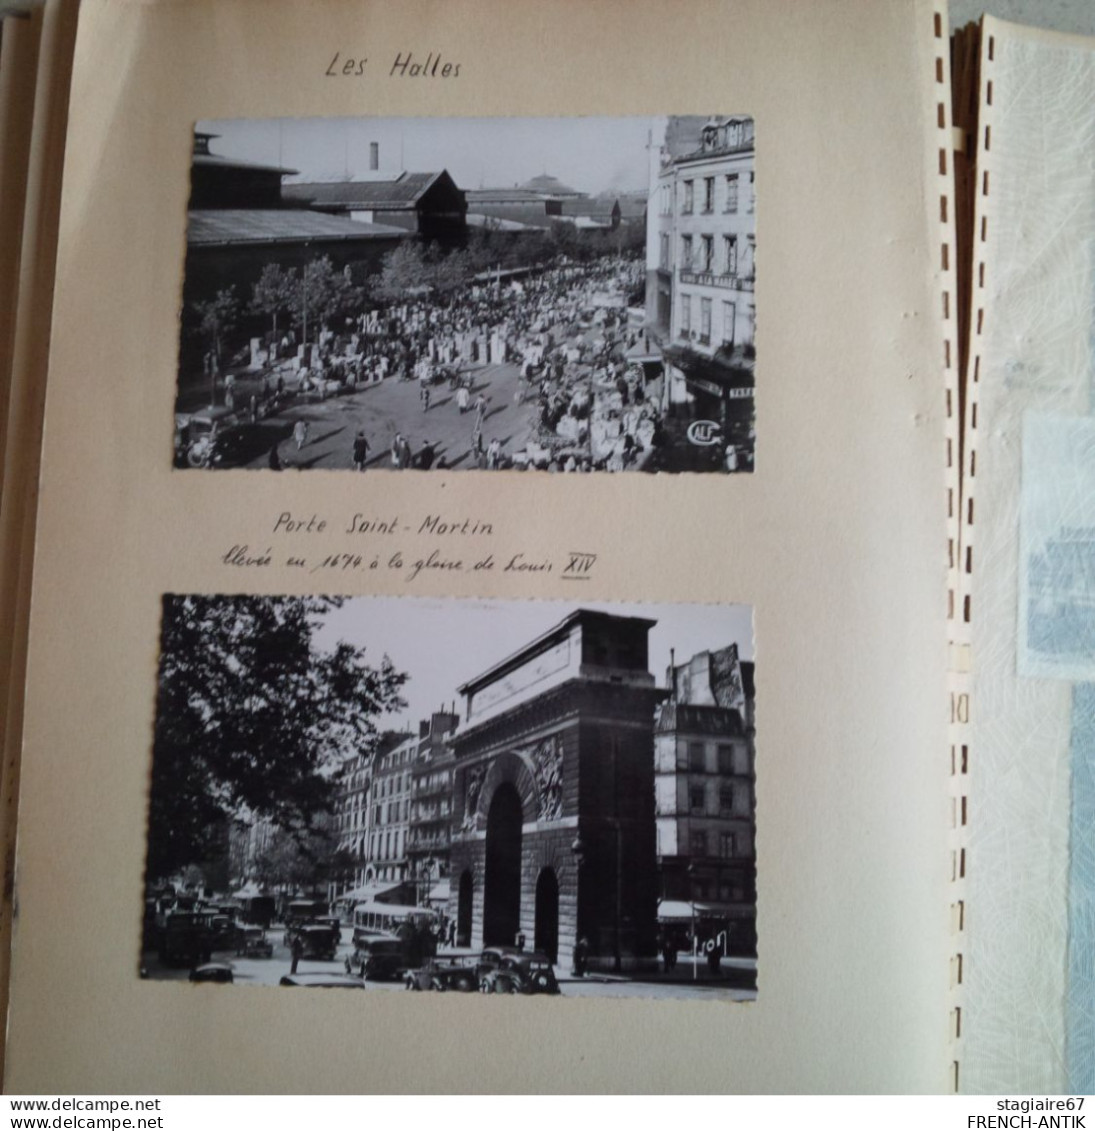 ALBUM PHOTO PARIS MONUMENTS PHOTO ET CARTE POSTALE 1951